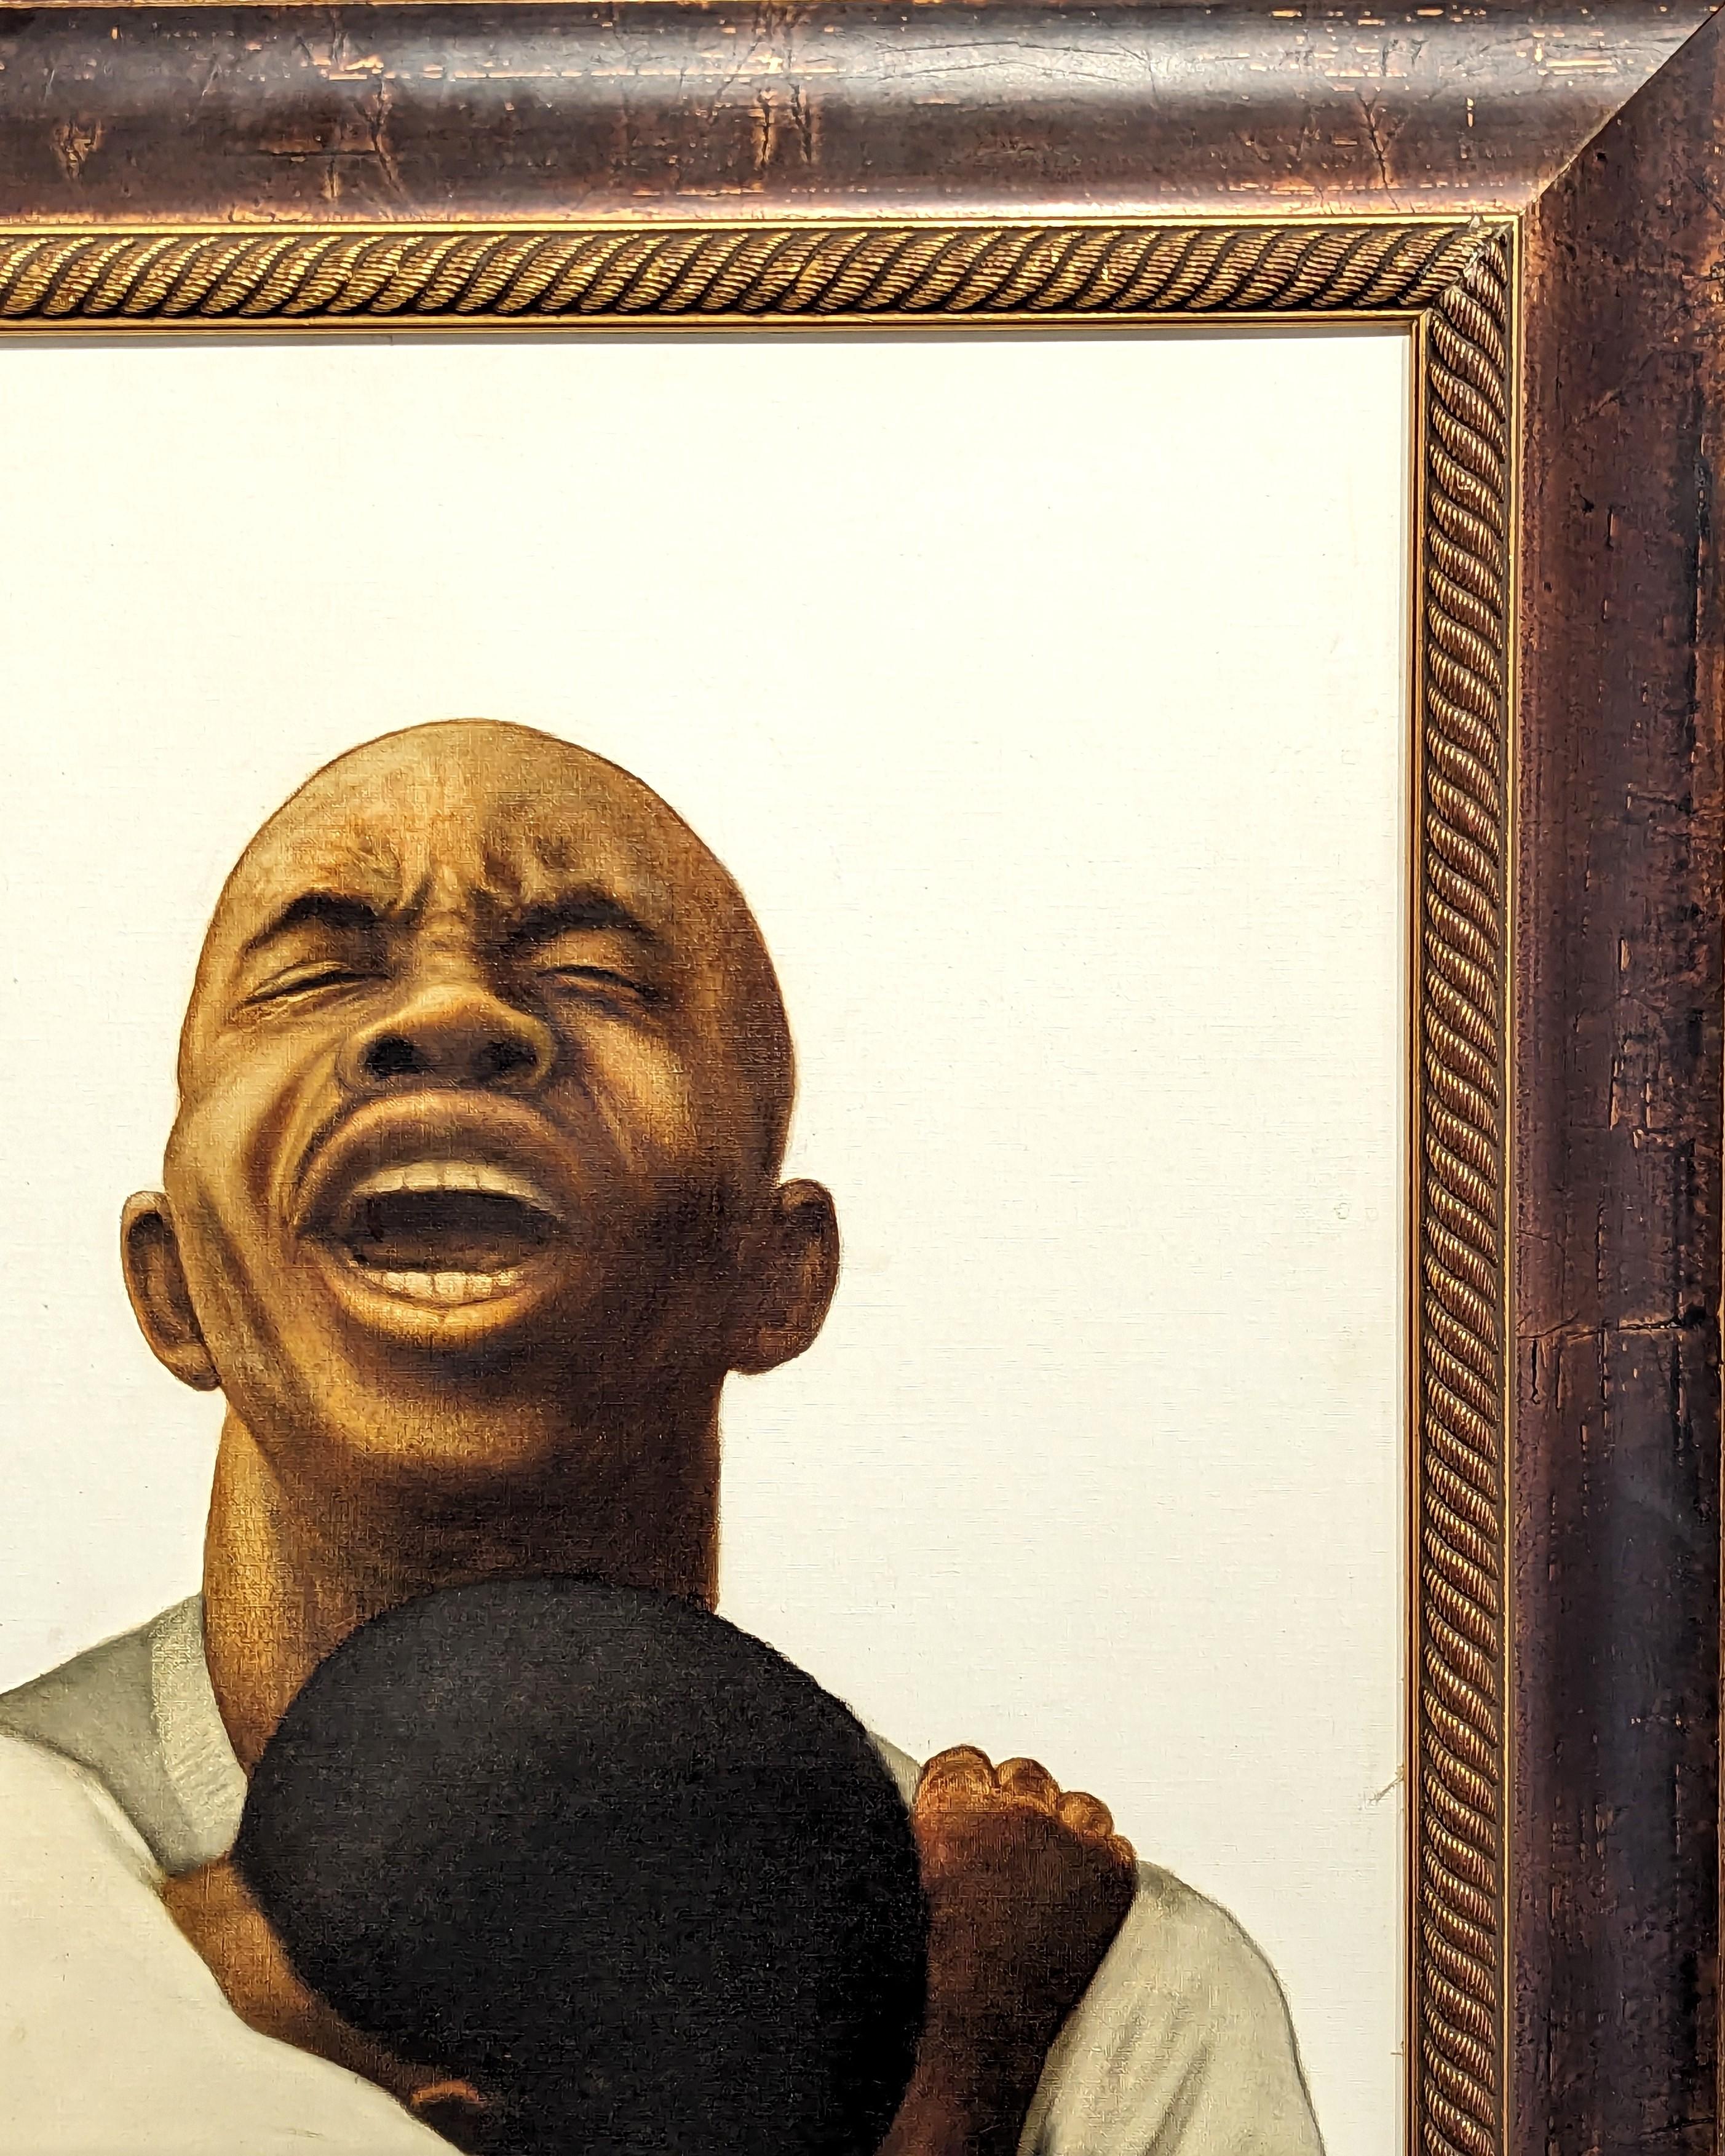 Frühe figurative Porträtmalerei des in Houston lebenden Künstlers Buford Evans. Das Werk zeigt einen schwarzen Mann, der mit einem verzweifelten Gesichtsausdruck in den Himmel blickt, während sich ein kleines Kind an ihn klammert. Signiert und